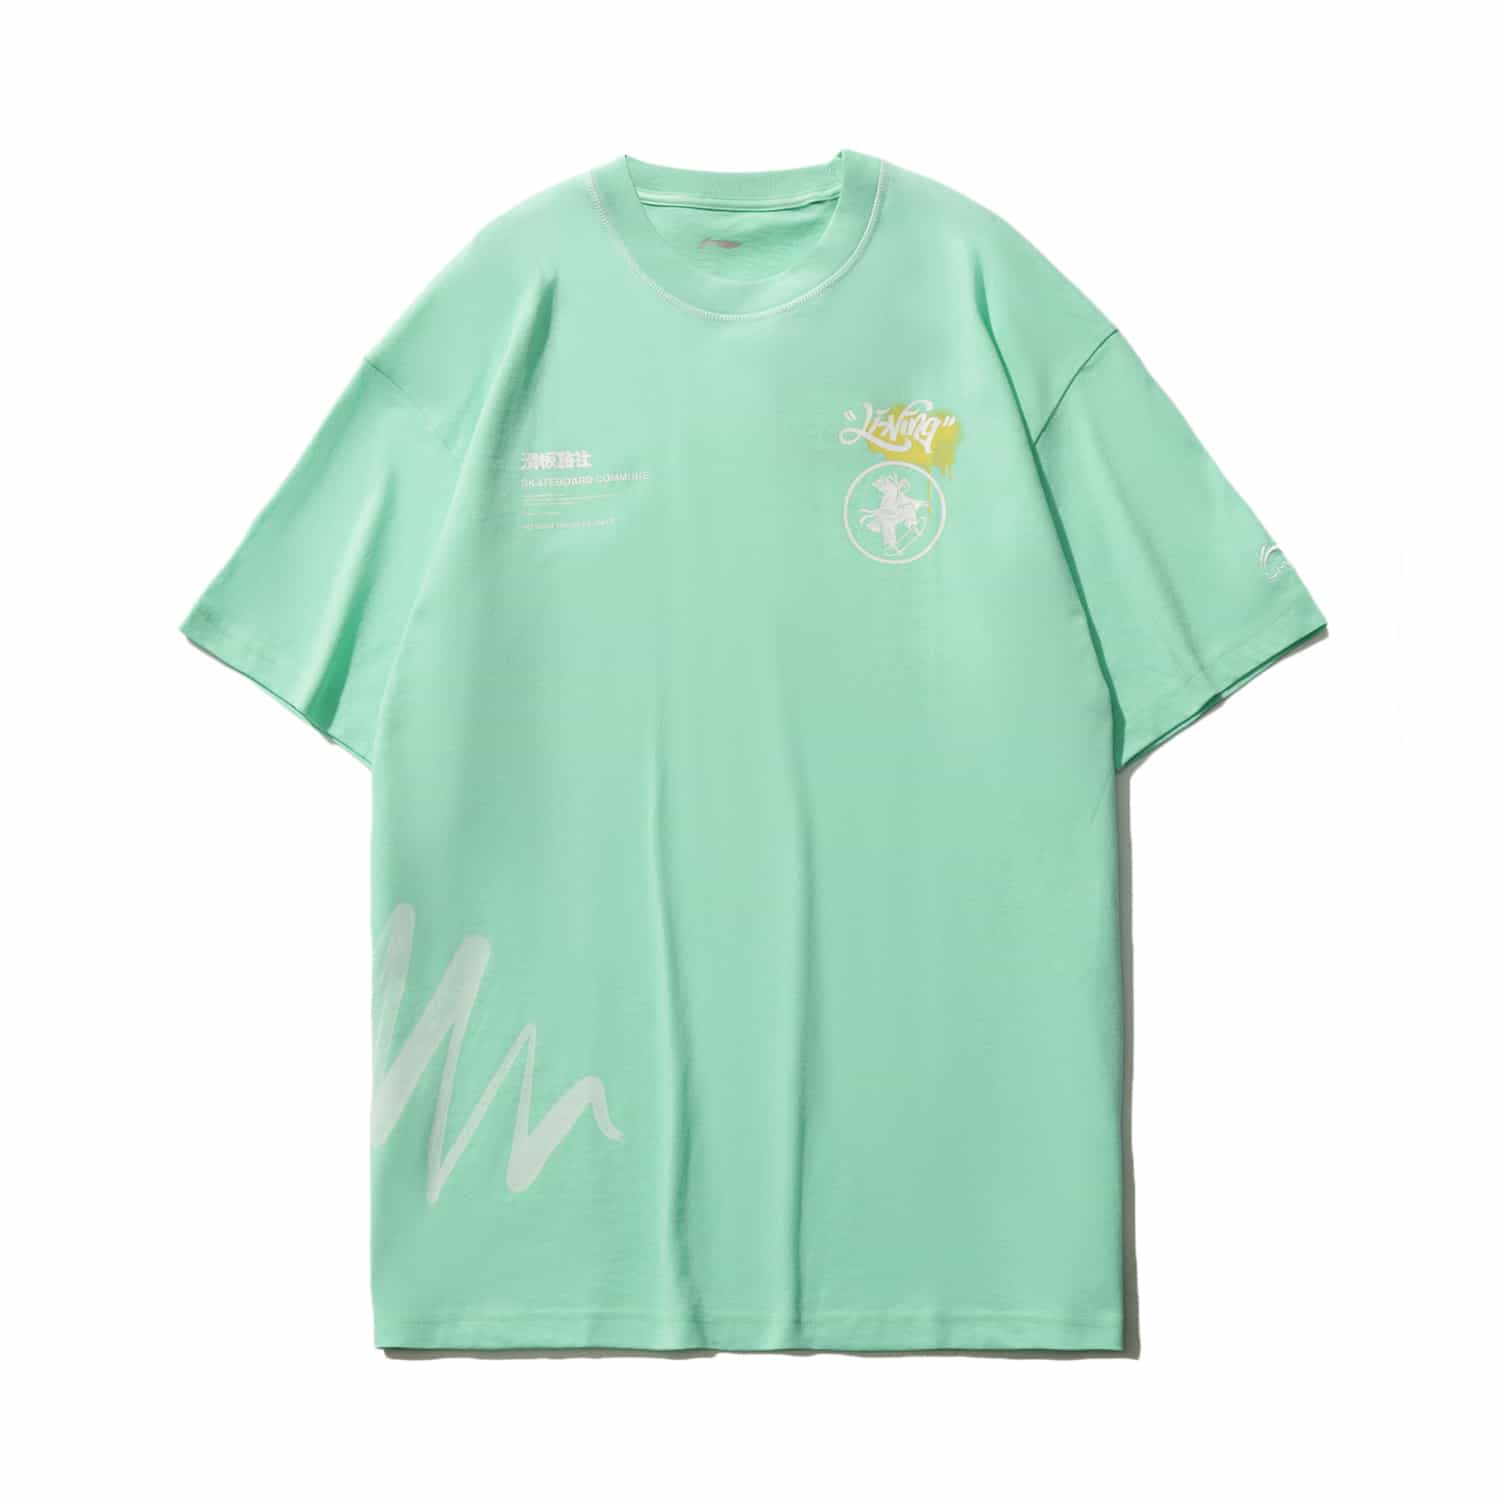 滑板系列寬鬆短袖T恤 - 甘藍綠